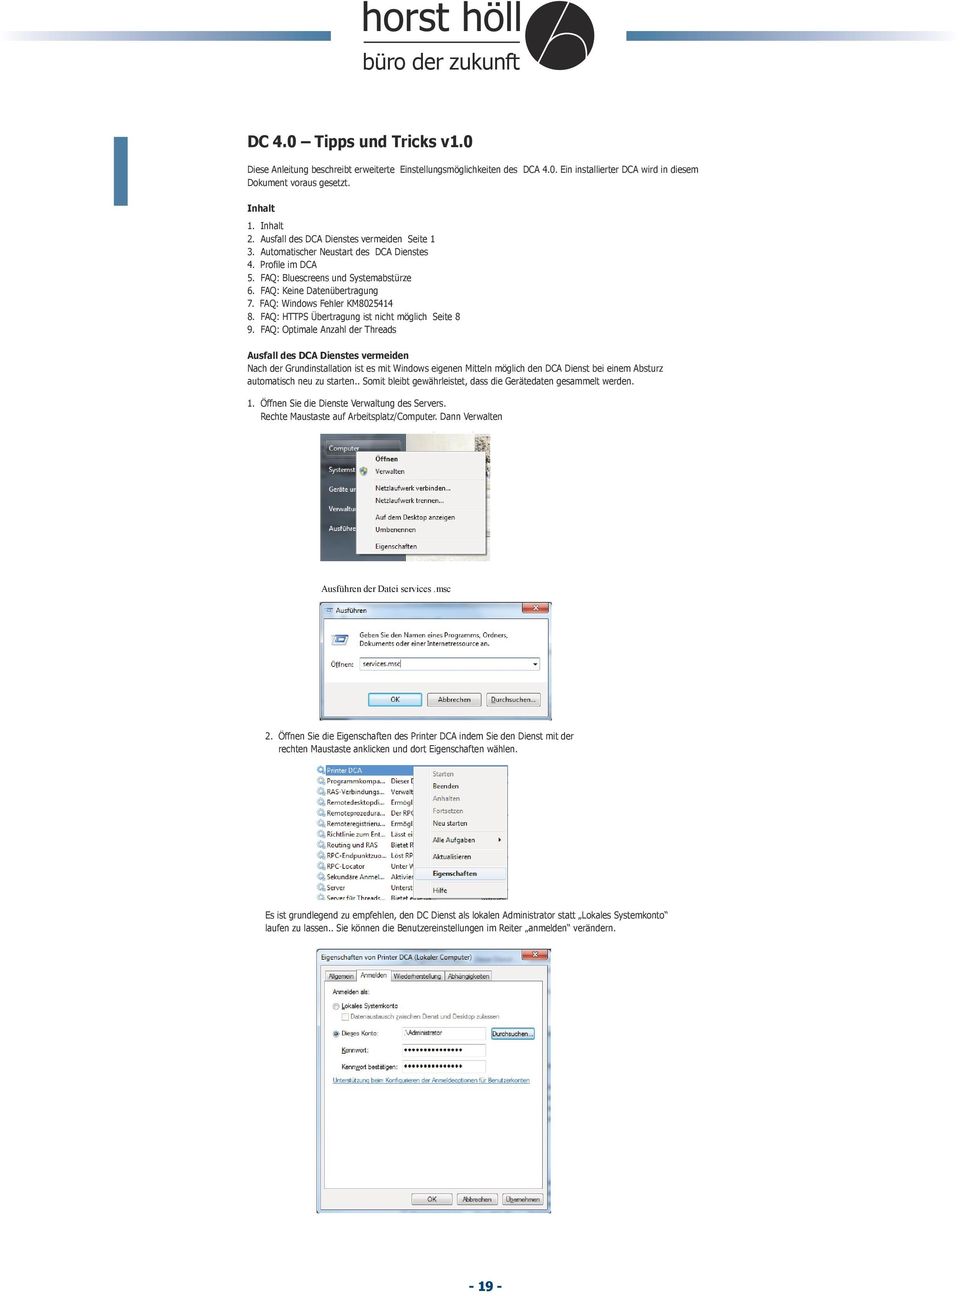 Automatischer Neustart des DCA Dienstes 4. Inhalt Profile im DCA 5. FAQ: 1. Bluescreens Inhalt und Systemabstürze 2. Aus fall des DCA Dienstes vermeiden Seite 1 6. FAQ: Keine Datenübertragung 3.